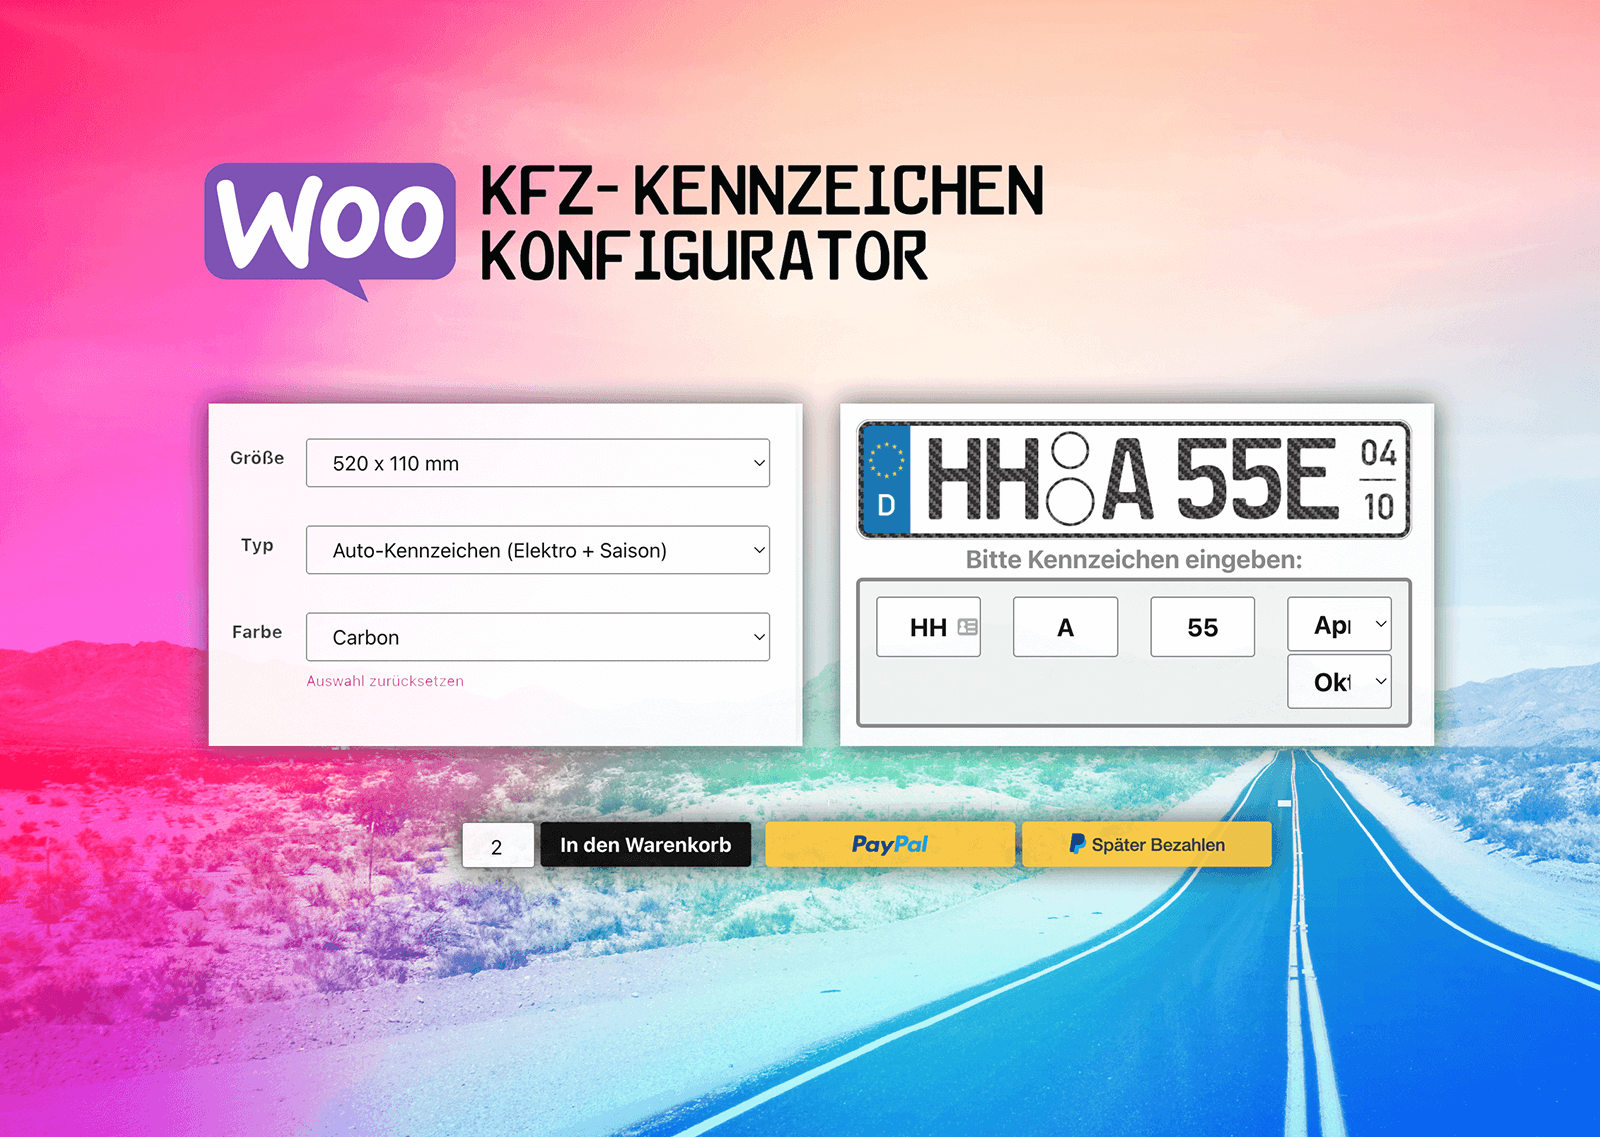 Woocommerce KFZ-Kennzeichen-Konfigurator 2022